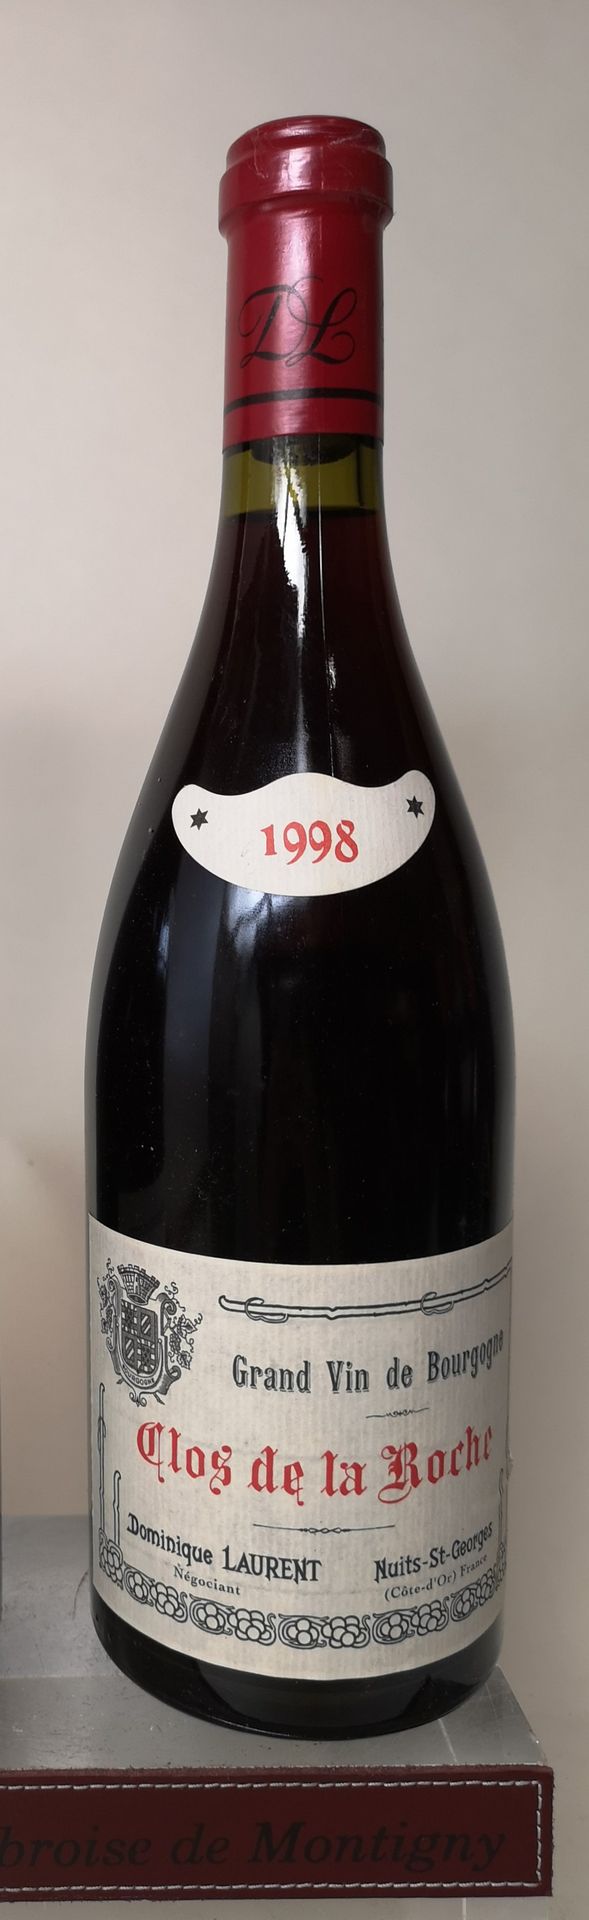 Null 
1 bouteille CLOS de la ROCHE Grand cru - Dominique LAURENT 1998

LOT VENDU&hellip;